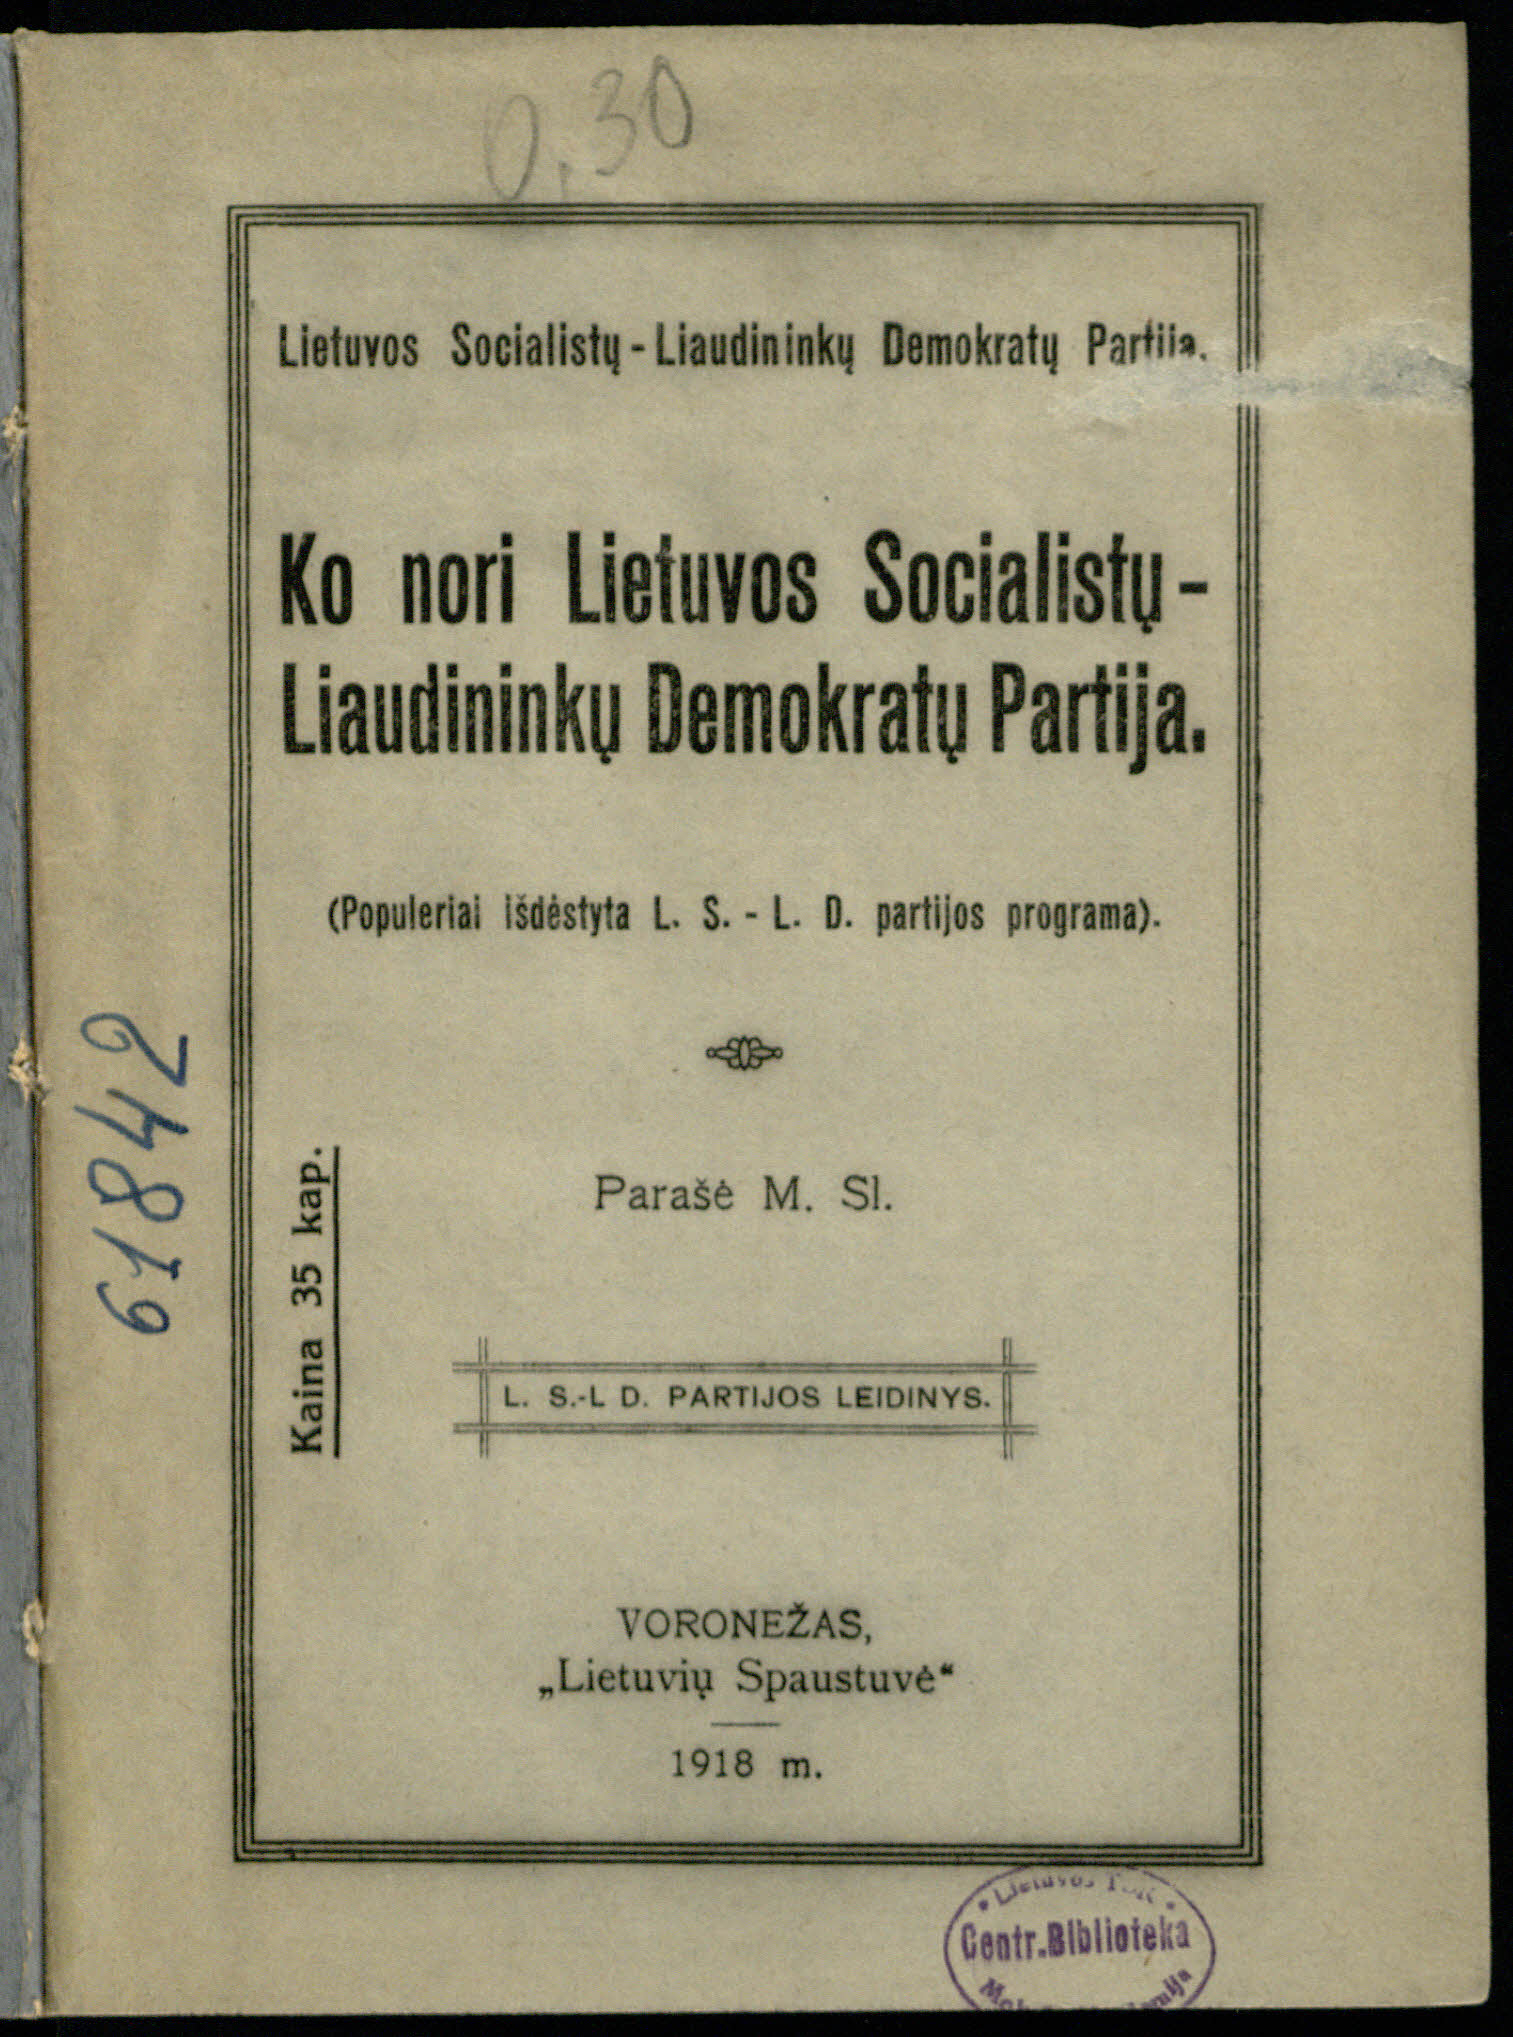 Mykolo Sleževičiaus knygelė <b>Ko nori Lietuvos socialistų-liaudininkų demokratų partija</b> (Voronežas, 1918)